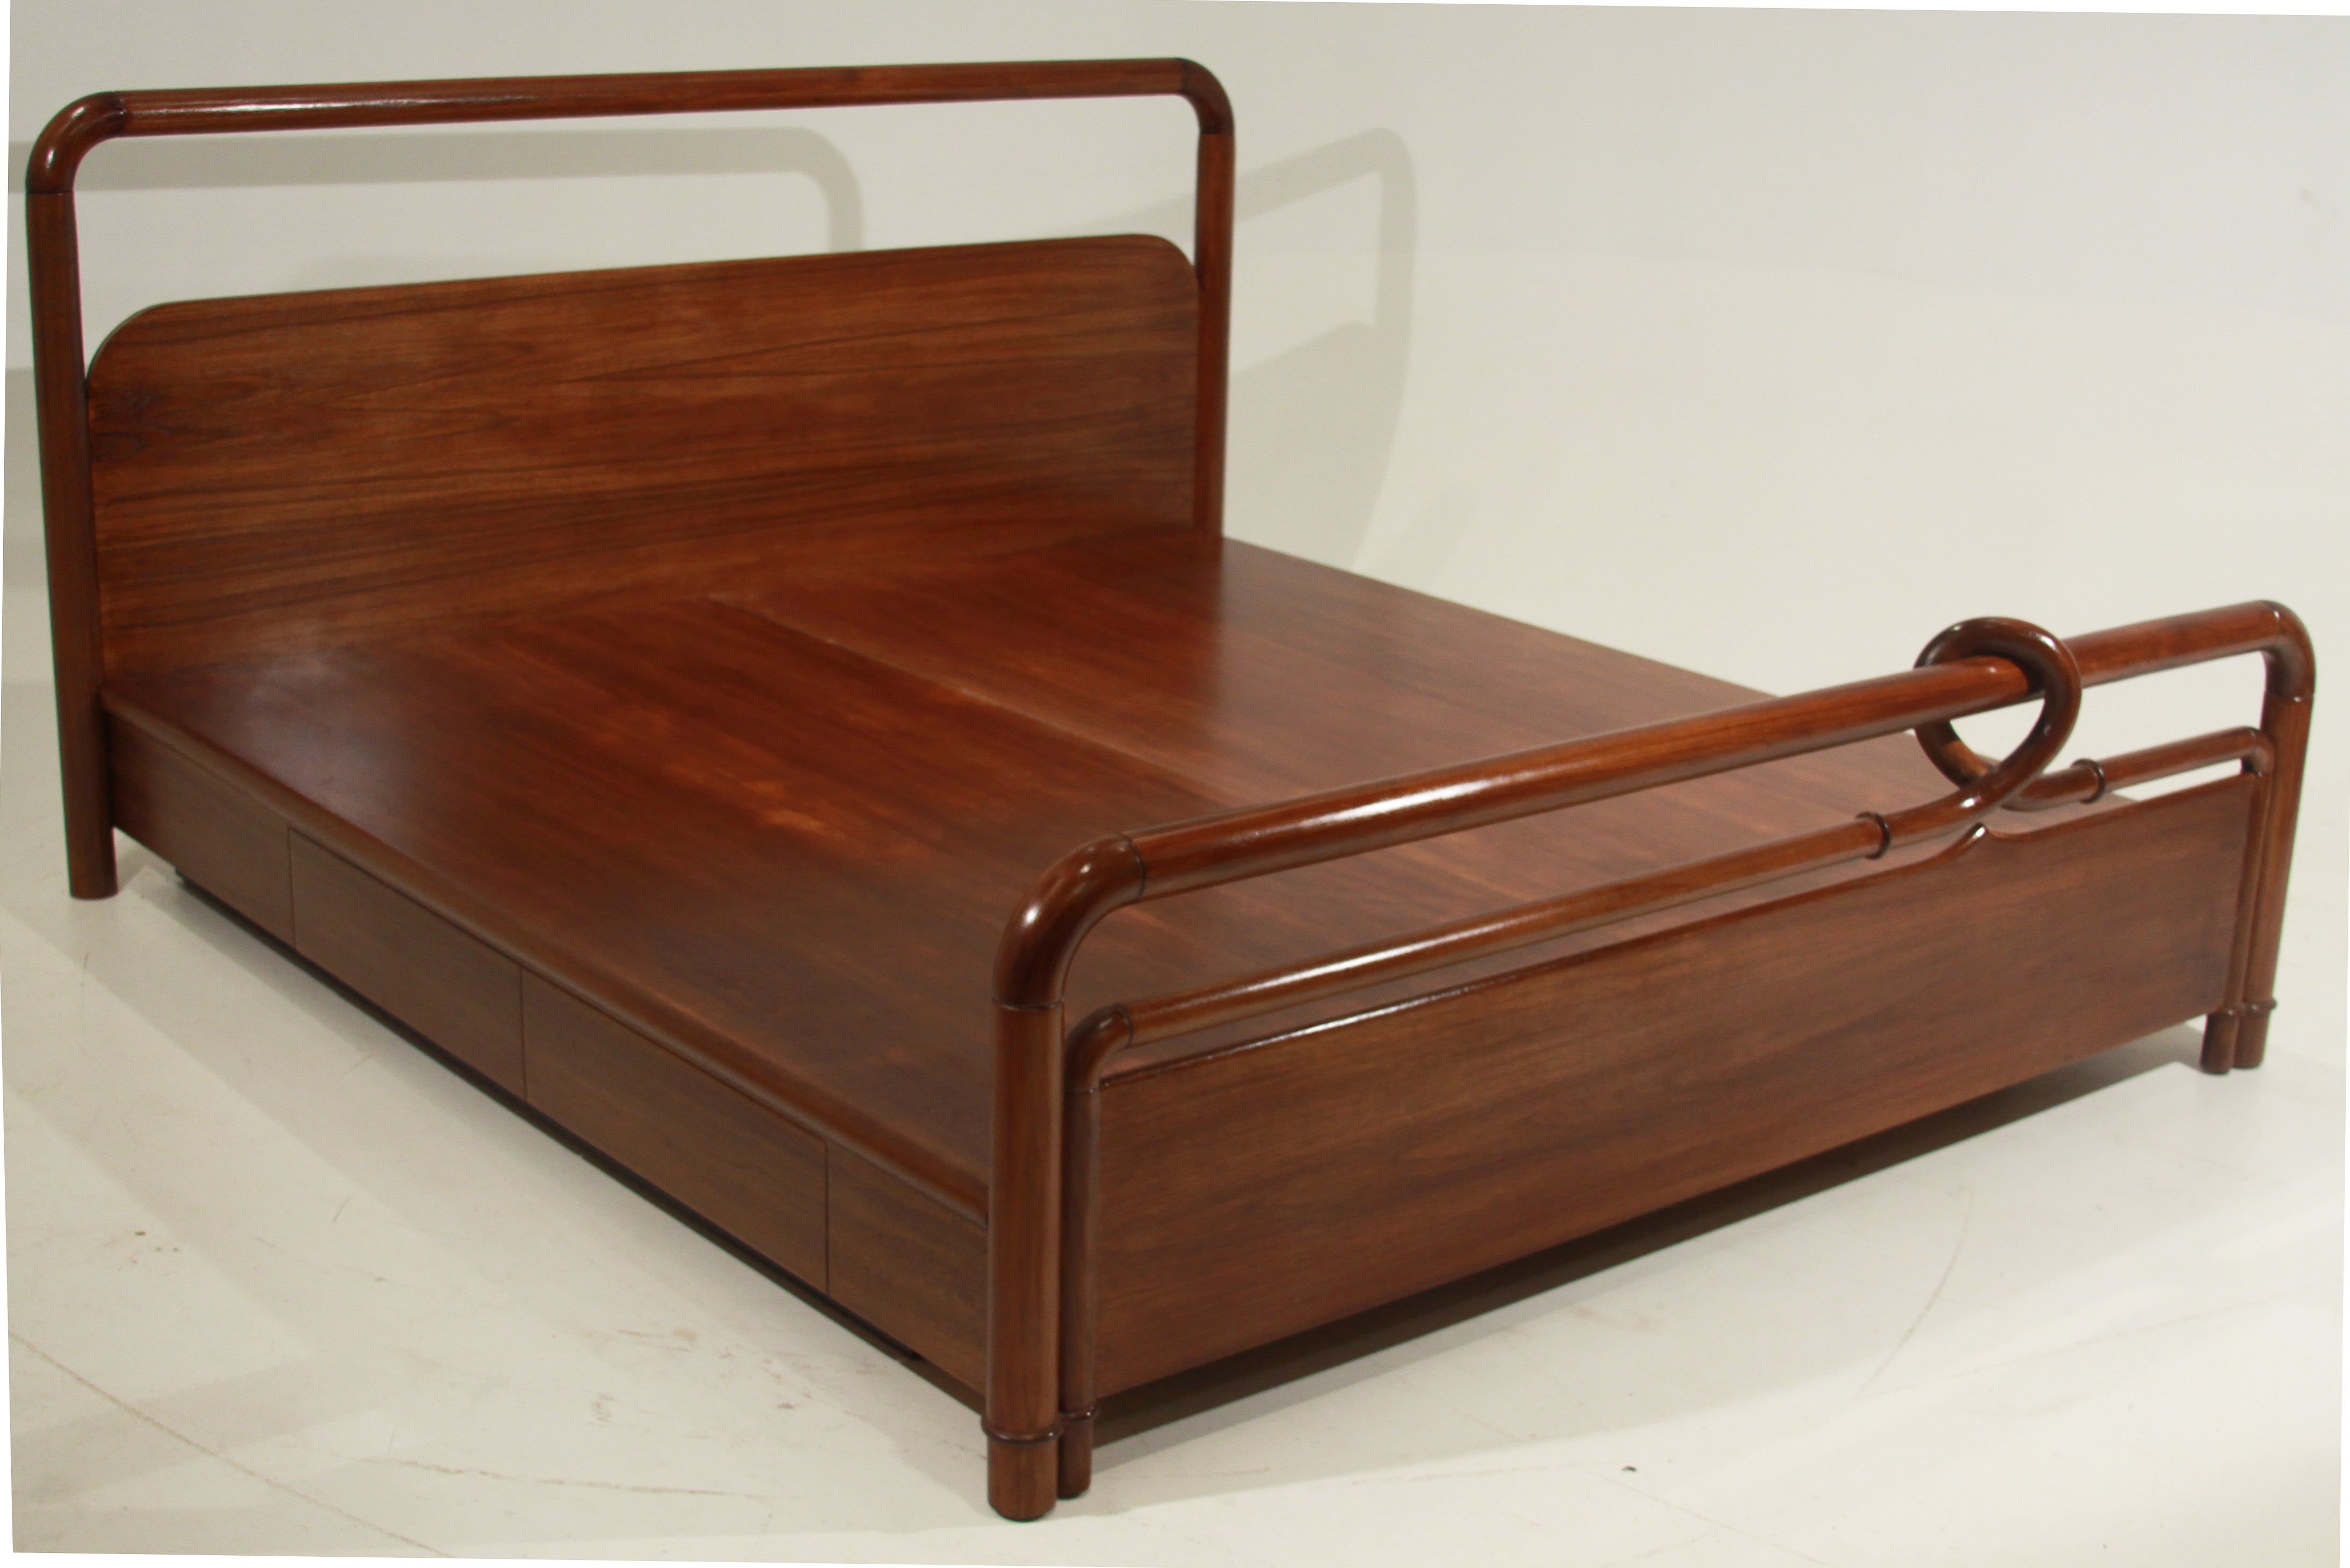 Carved Teak Craftsman Revolution Style Bed